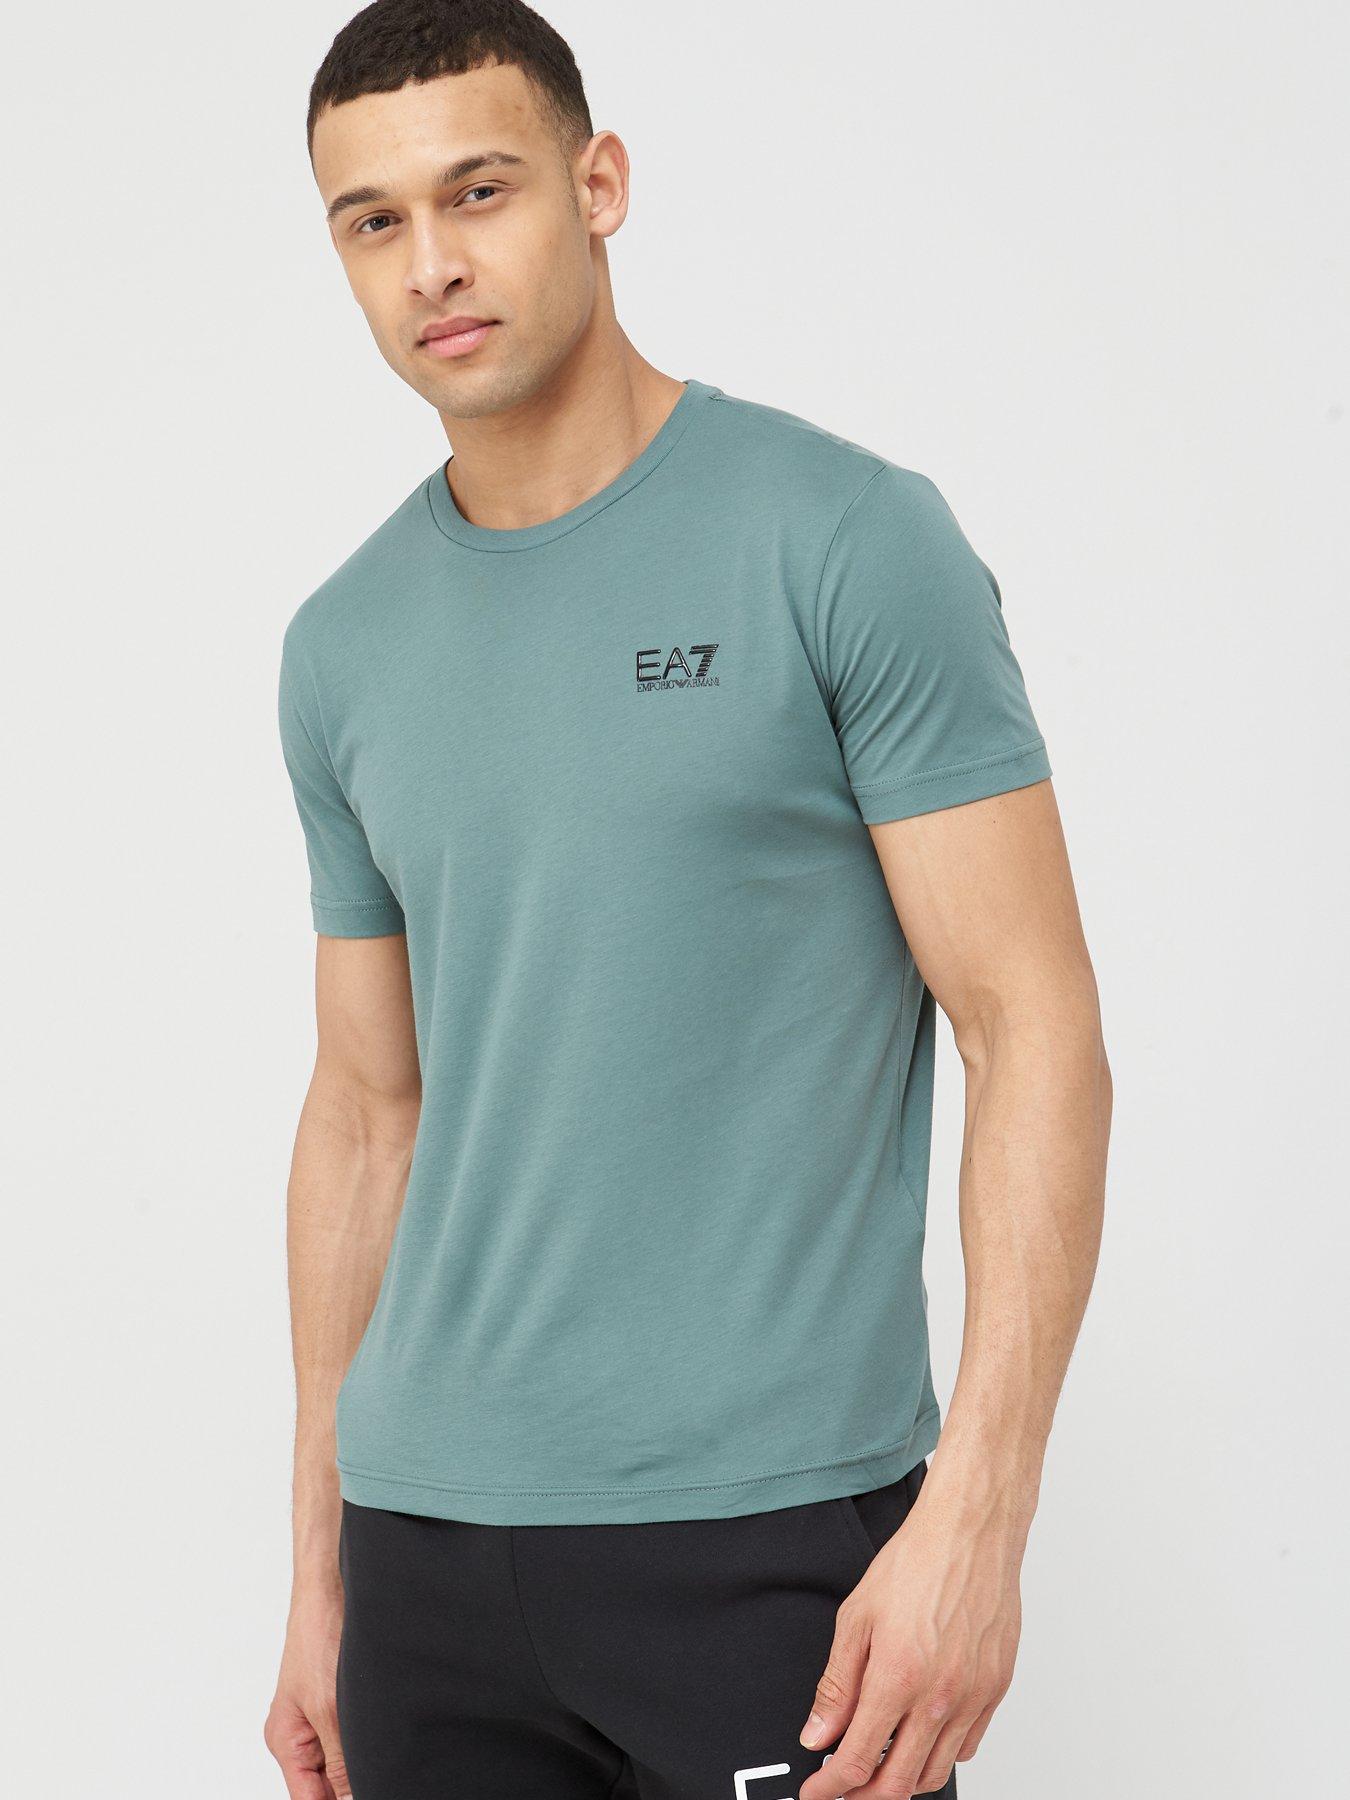 ea7 core id t shirt